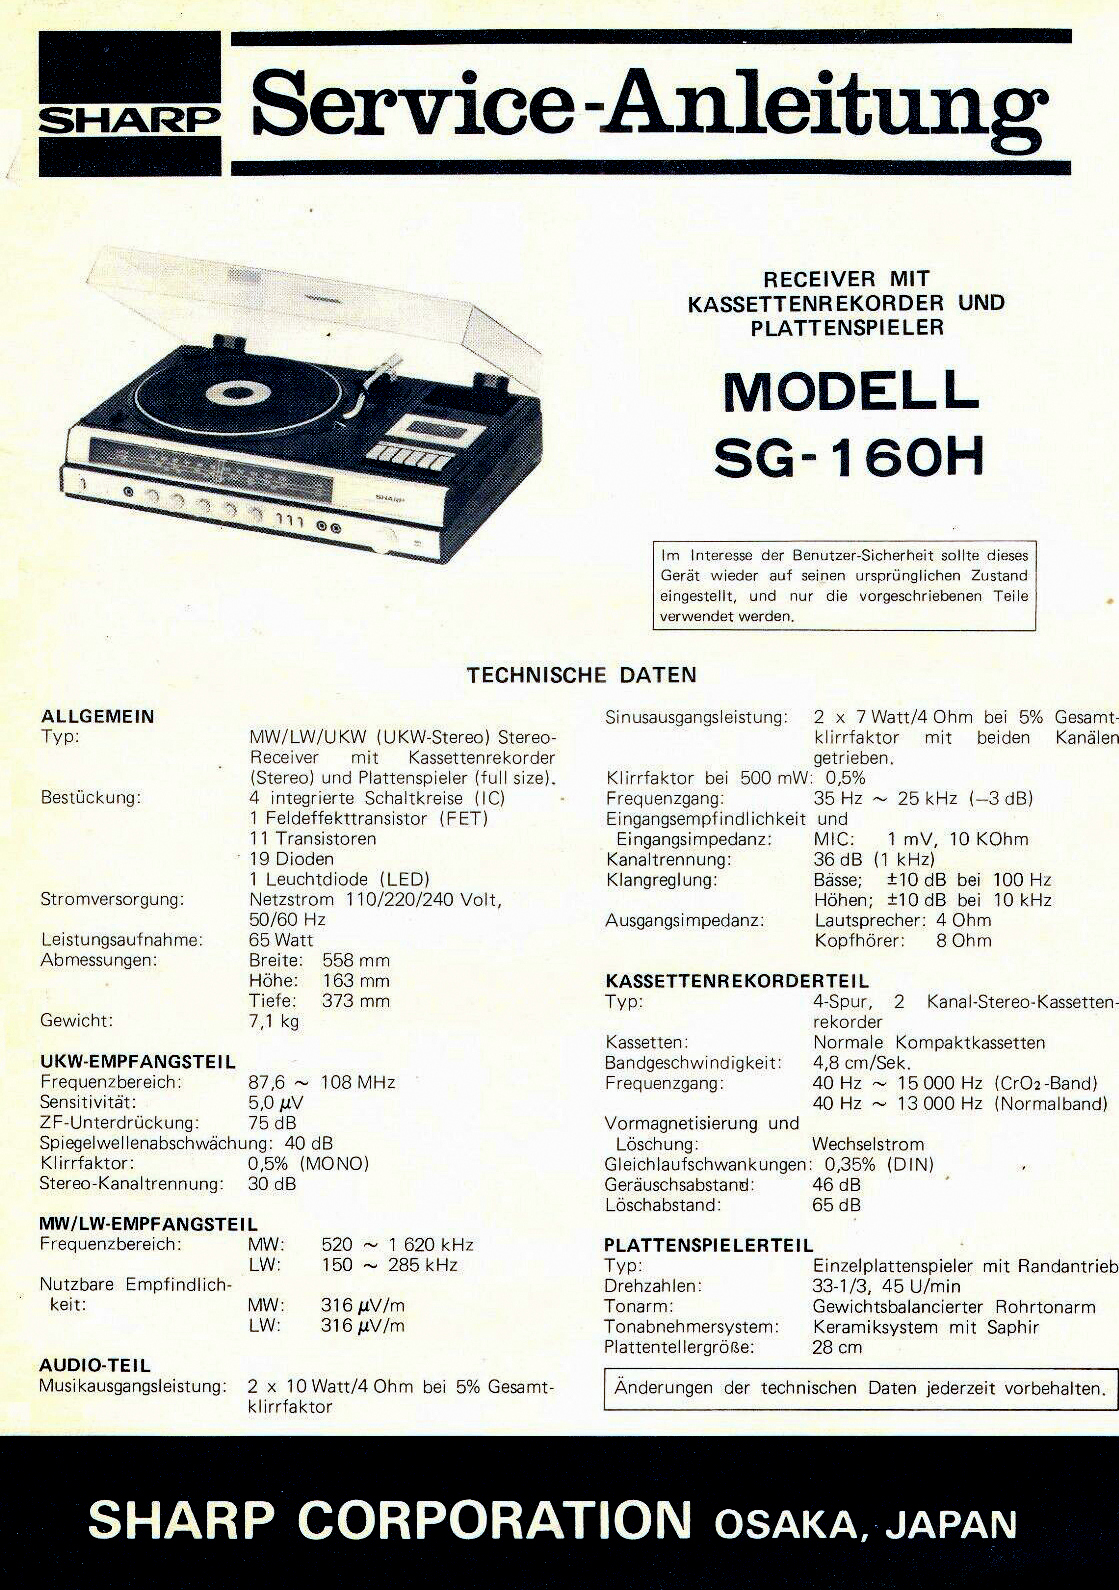 Sharp SG-160 H-Manual.jpg